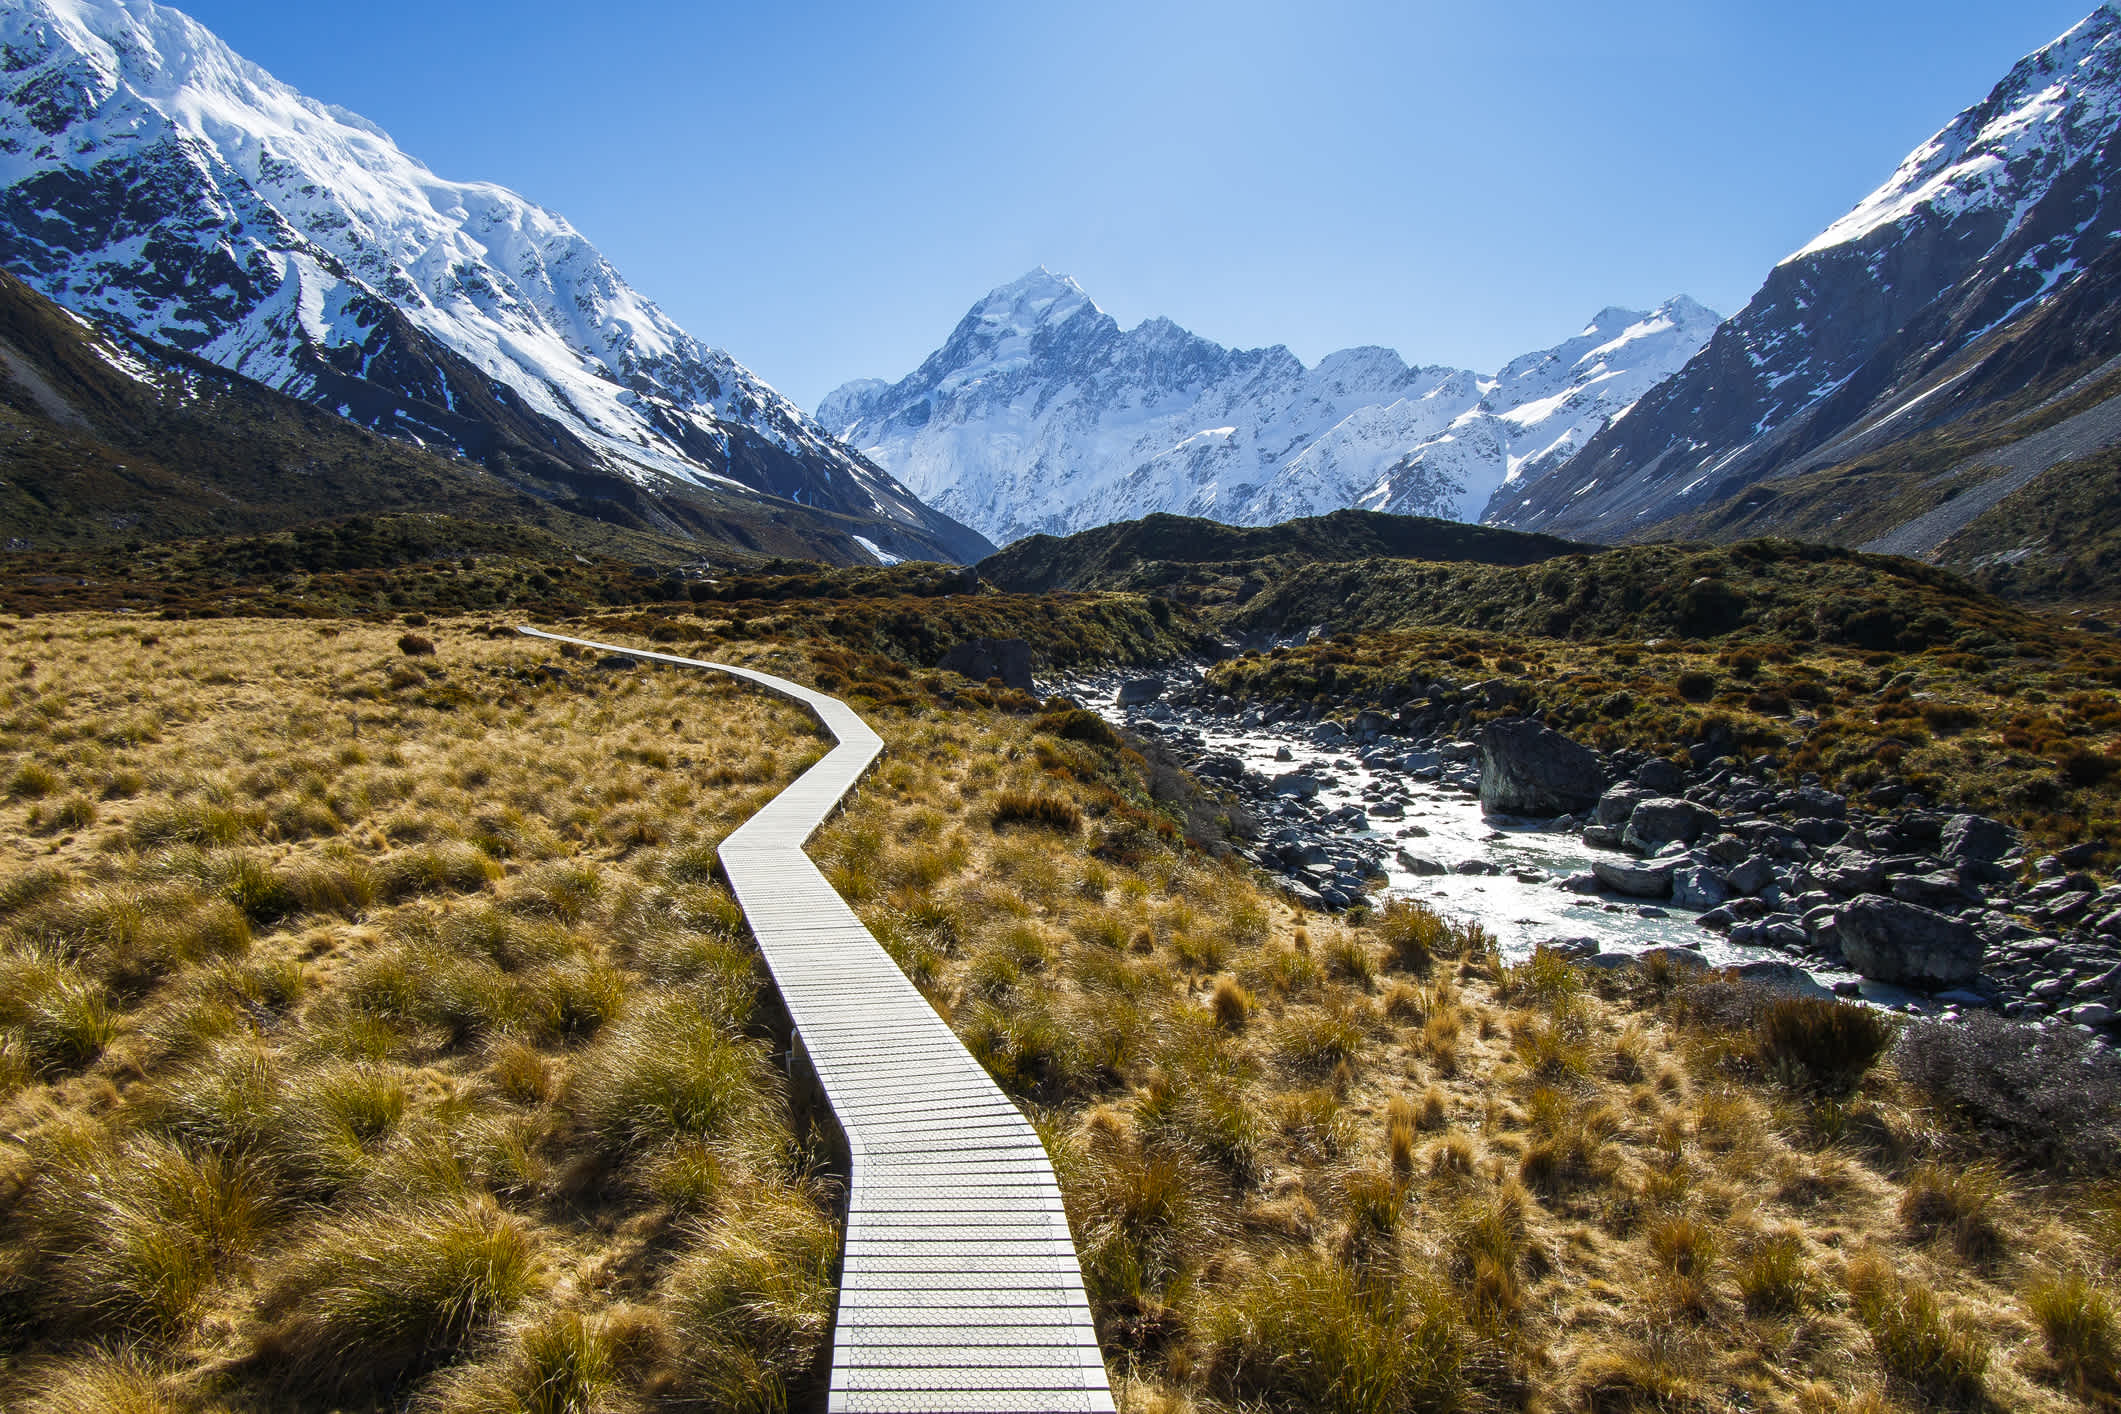 Bergwanderweg in einem Tal, umgeben von schneebedeckten Bergen auf dem Weg zum Mount Cook, Neuseeland